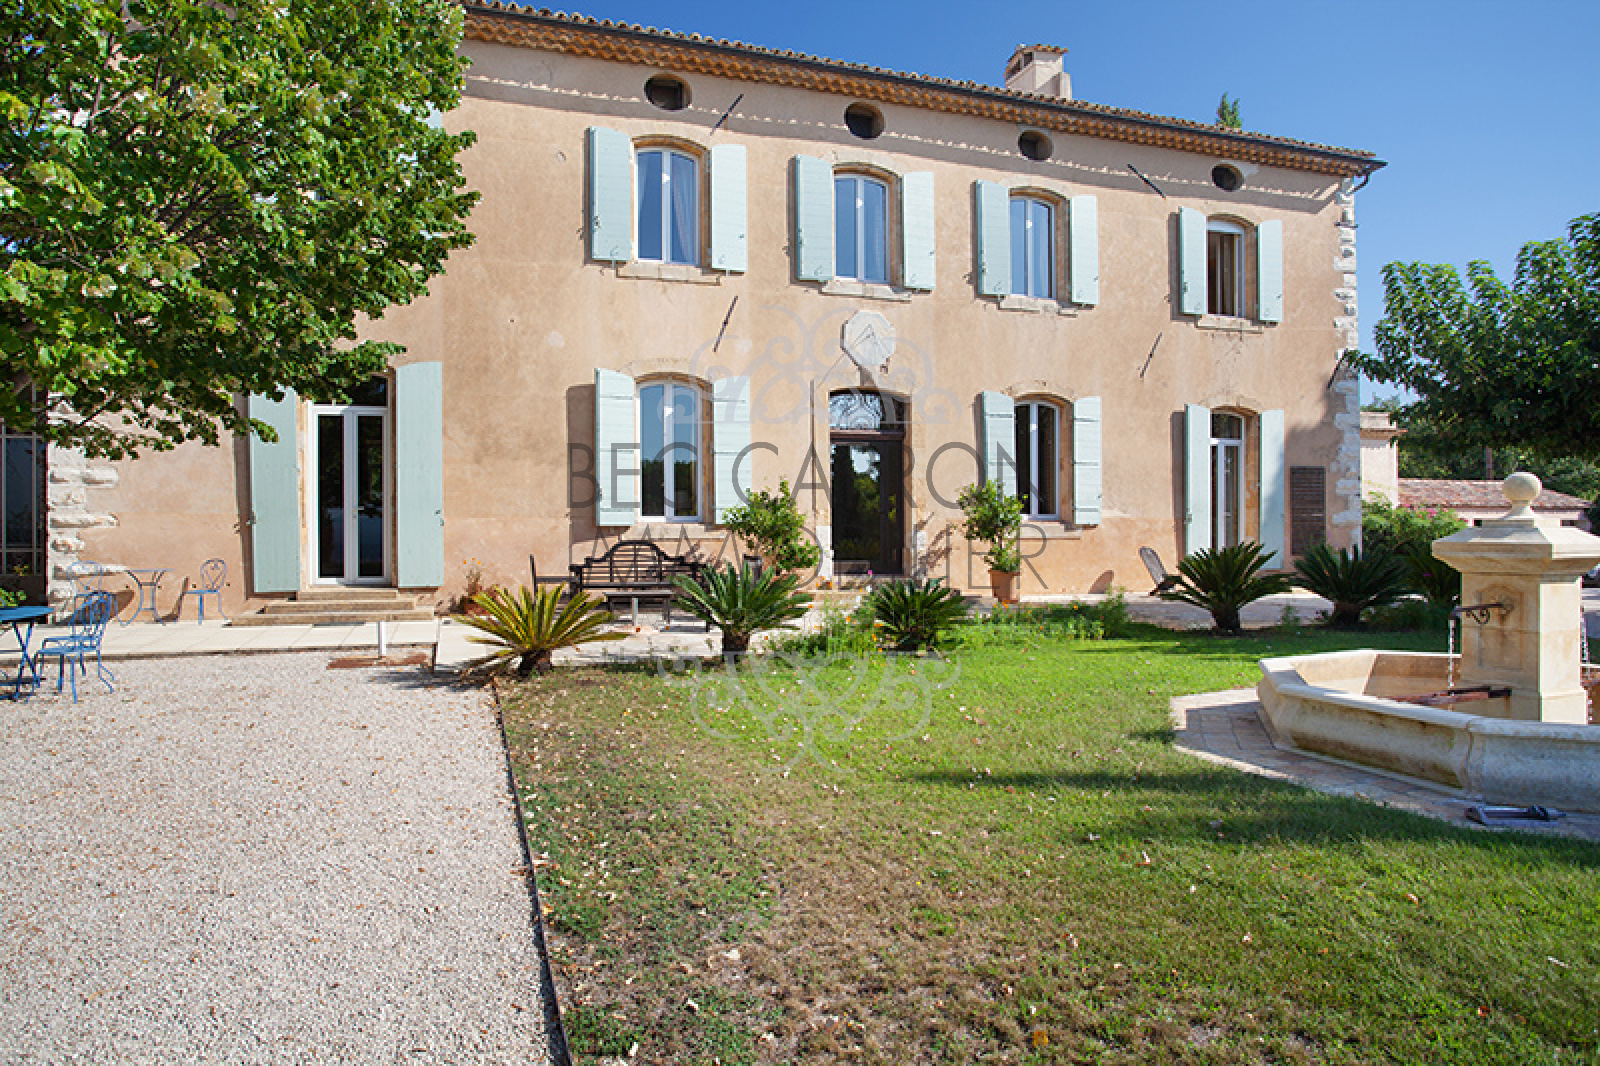 Image_4, Maisons (maison, propriÃ©tÃ©, villa, Mas,bastide, maison de village), Aix-en-Provence, ref :975 VM